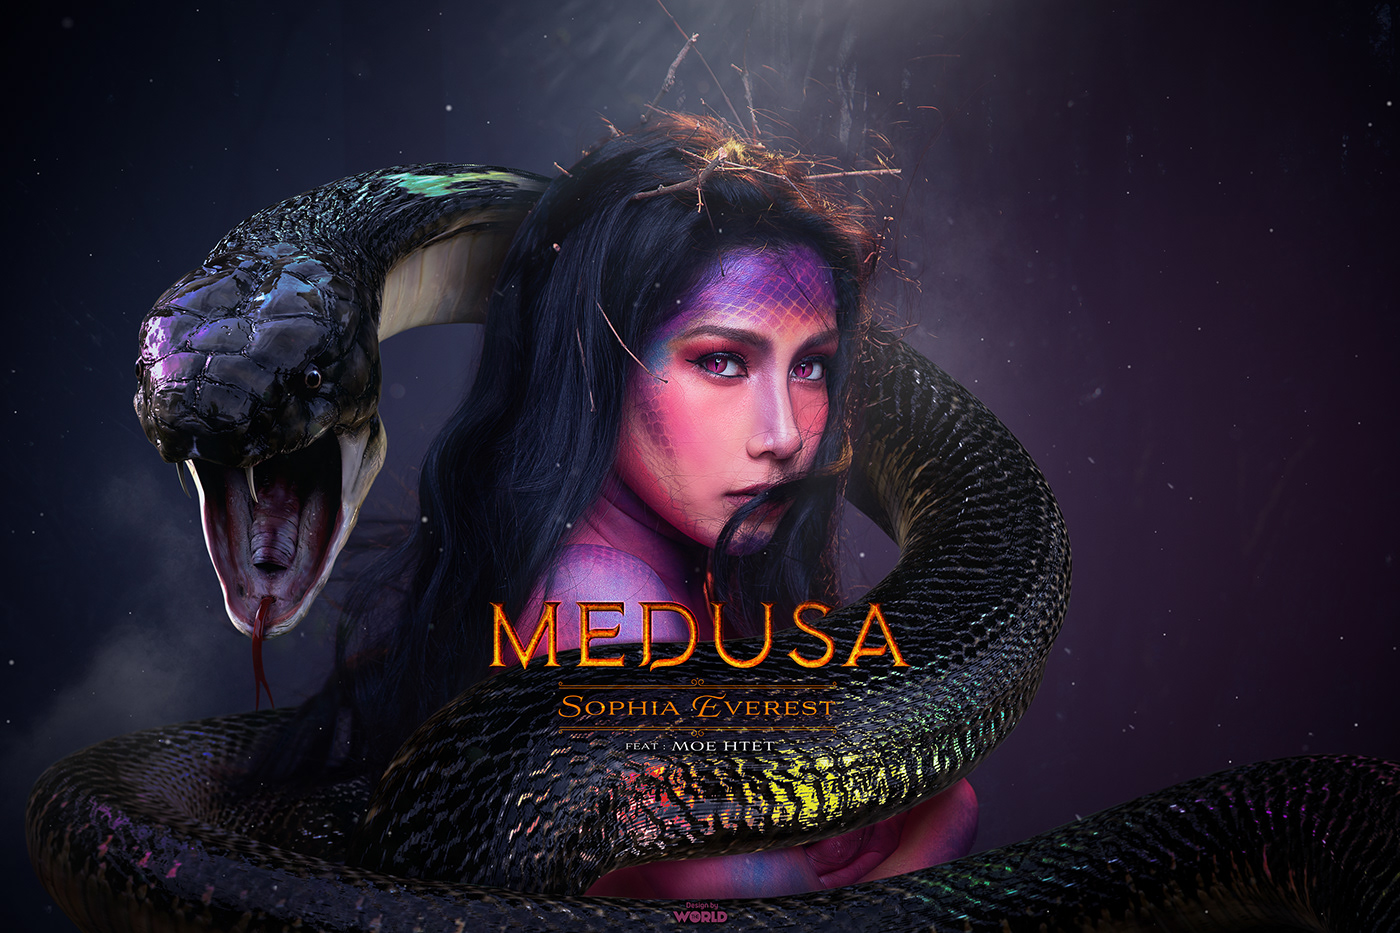 medusa snake music poster design Sophia Everest yangon myanmar